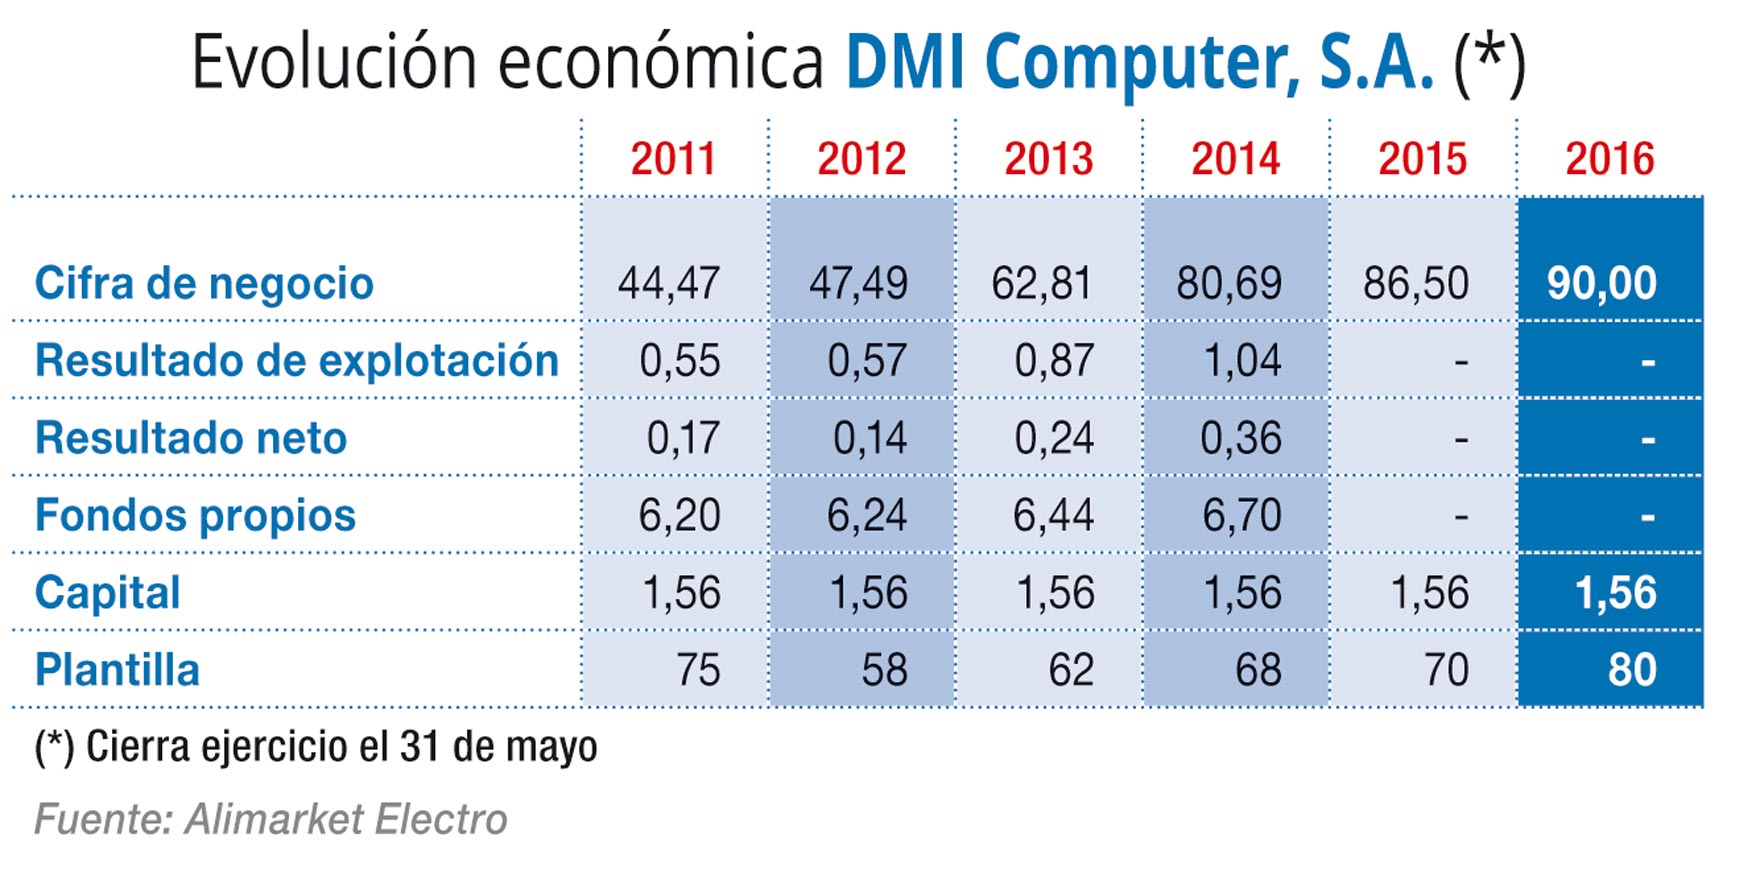 Evolución económica DMI Computer, S.A. (*)